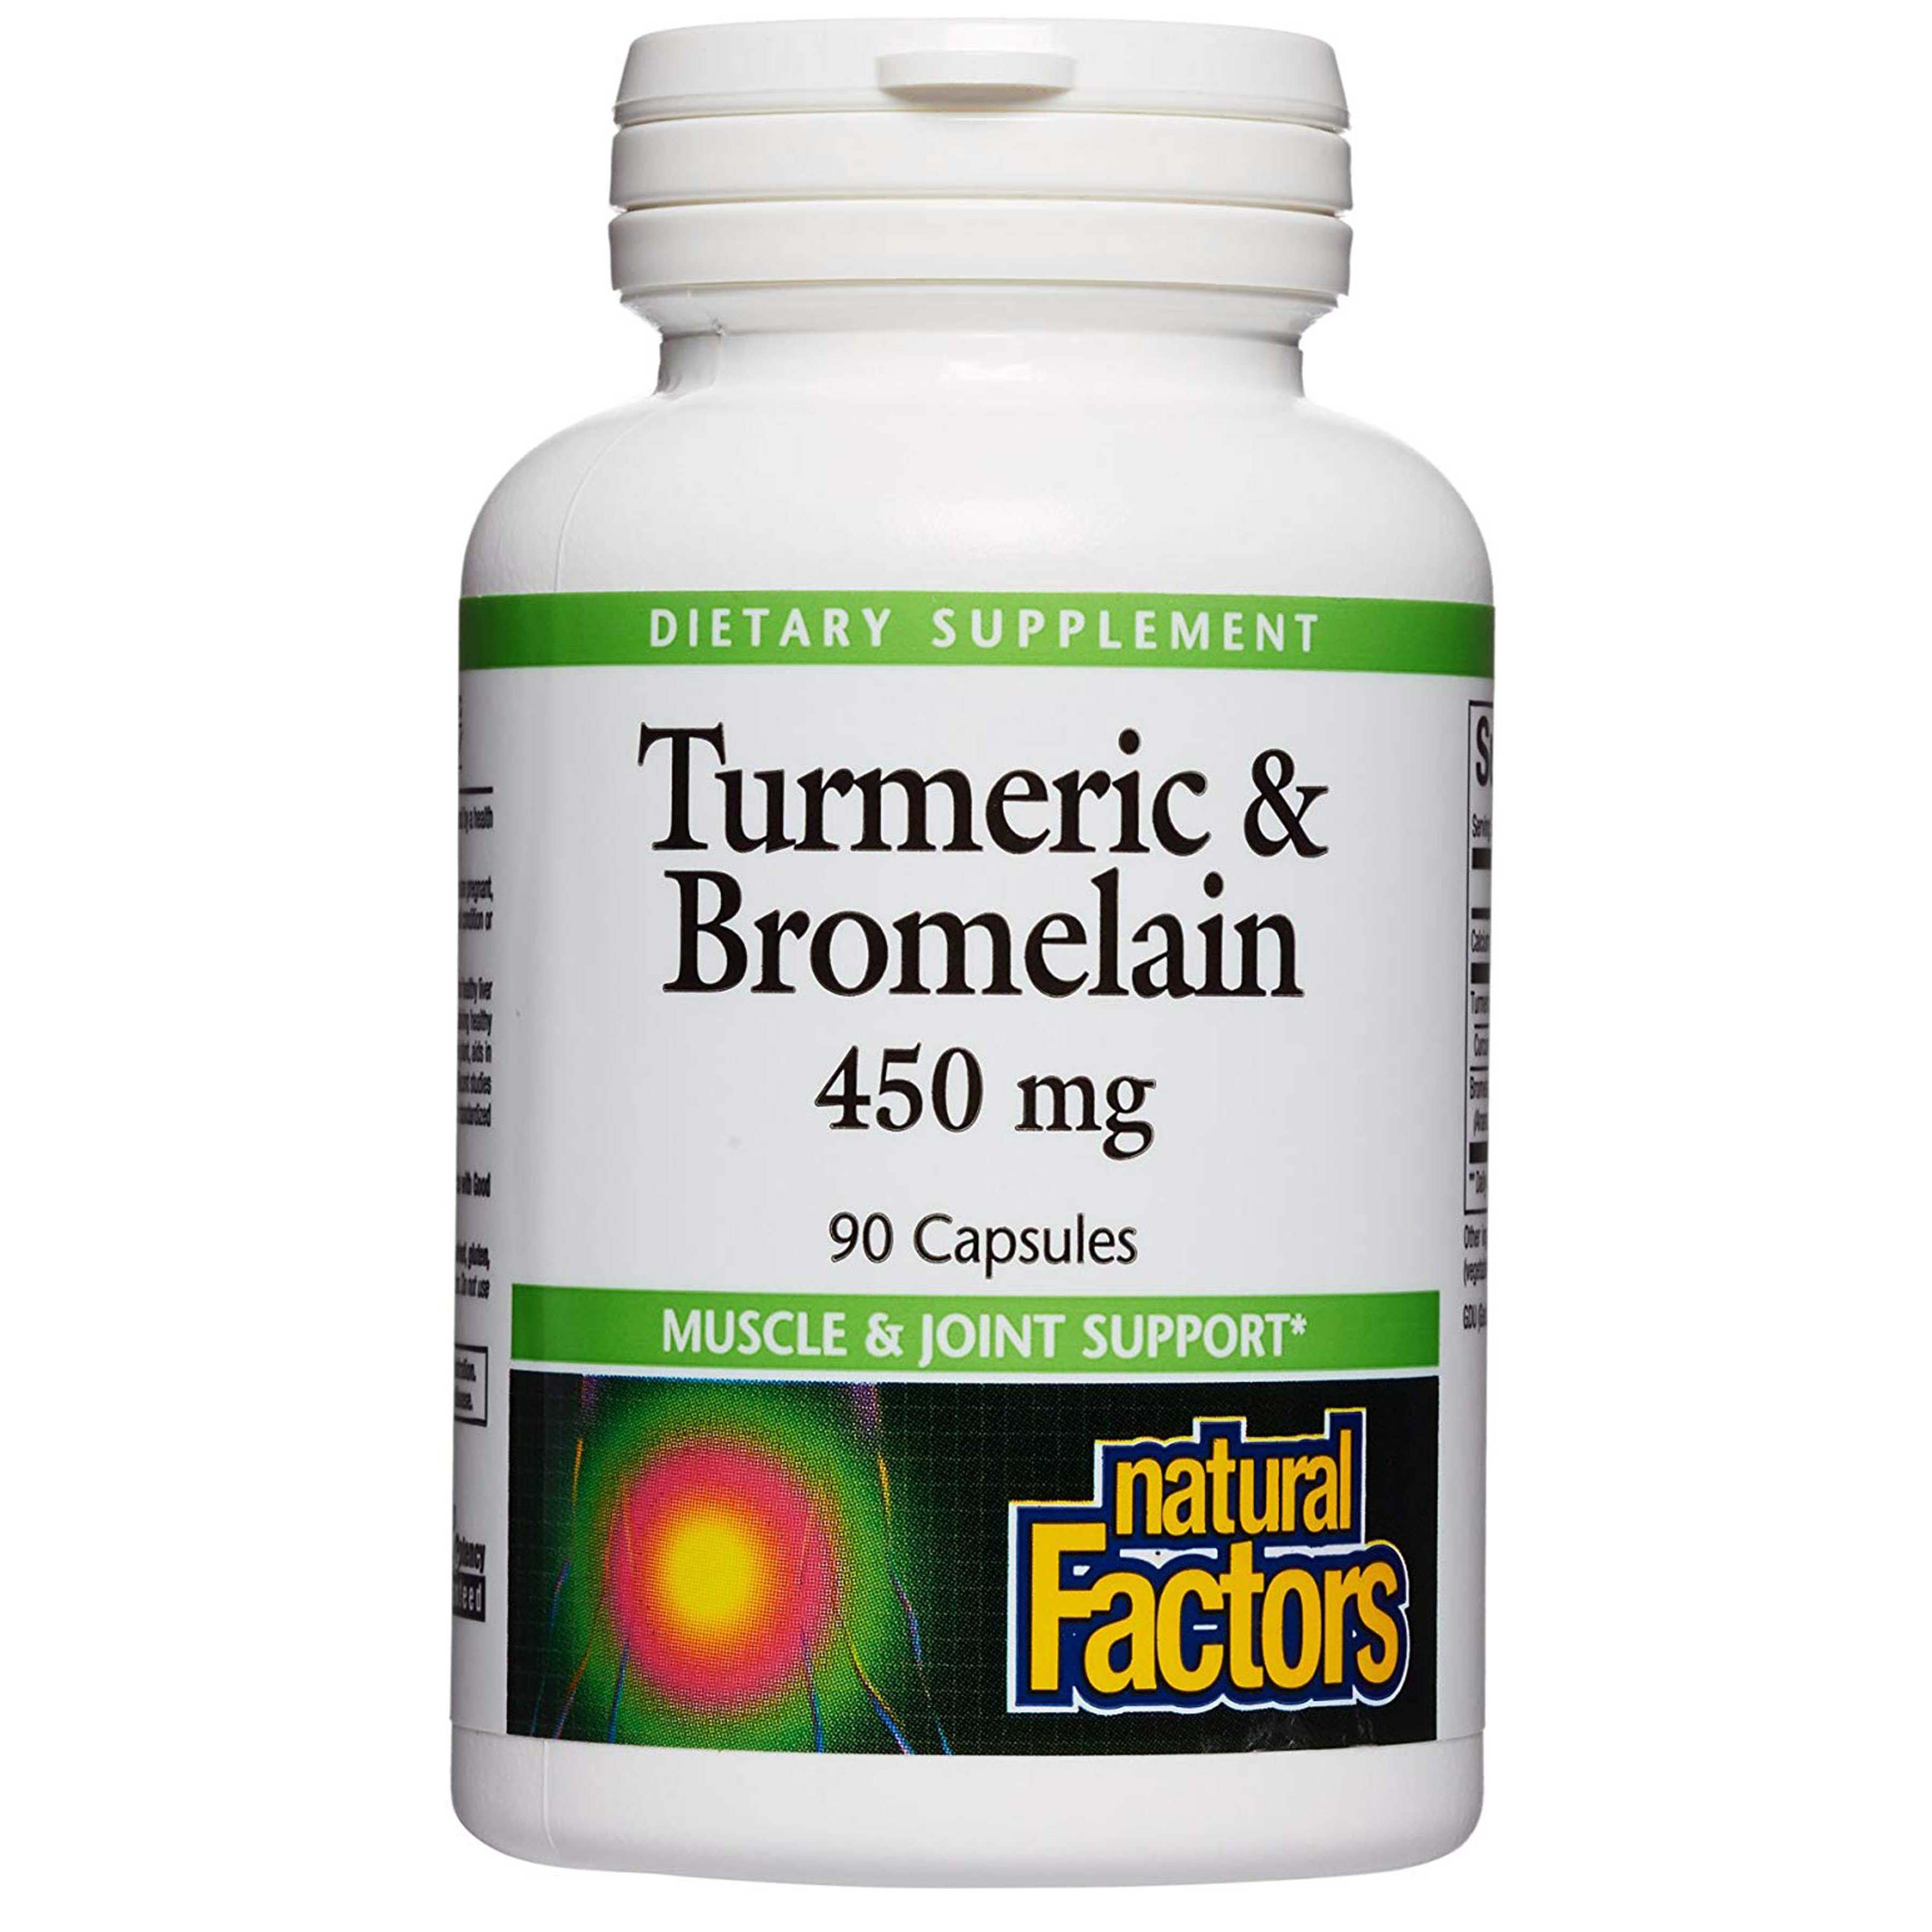 Natural Factors Turmeric & Bromelain 90 Capsules 450 mg